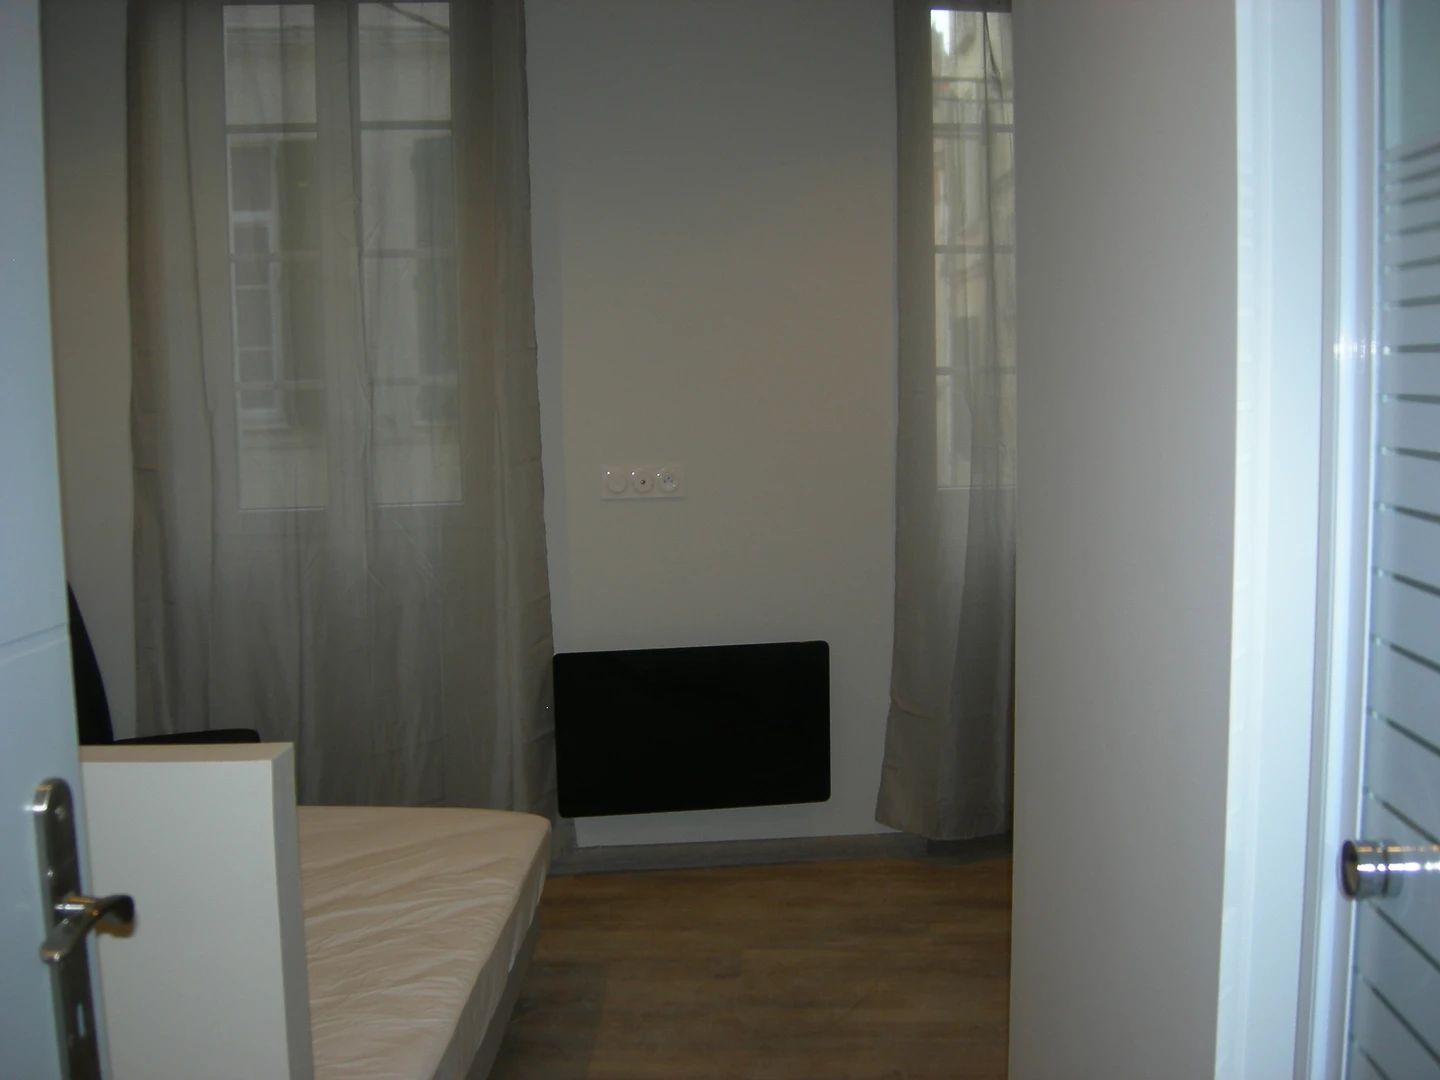 Chambre à louer dans un appartement en colocation à Perpignan